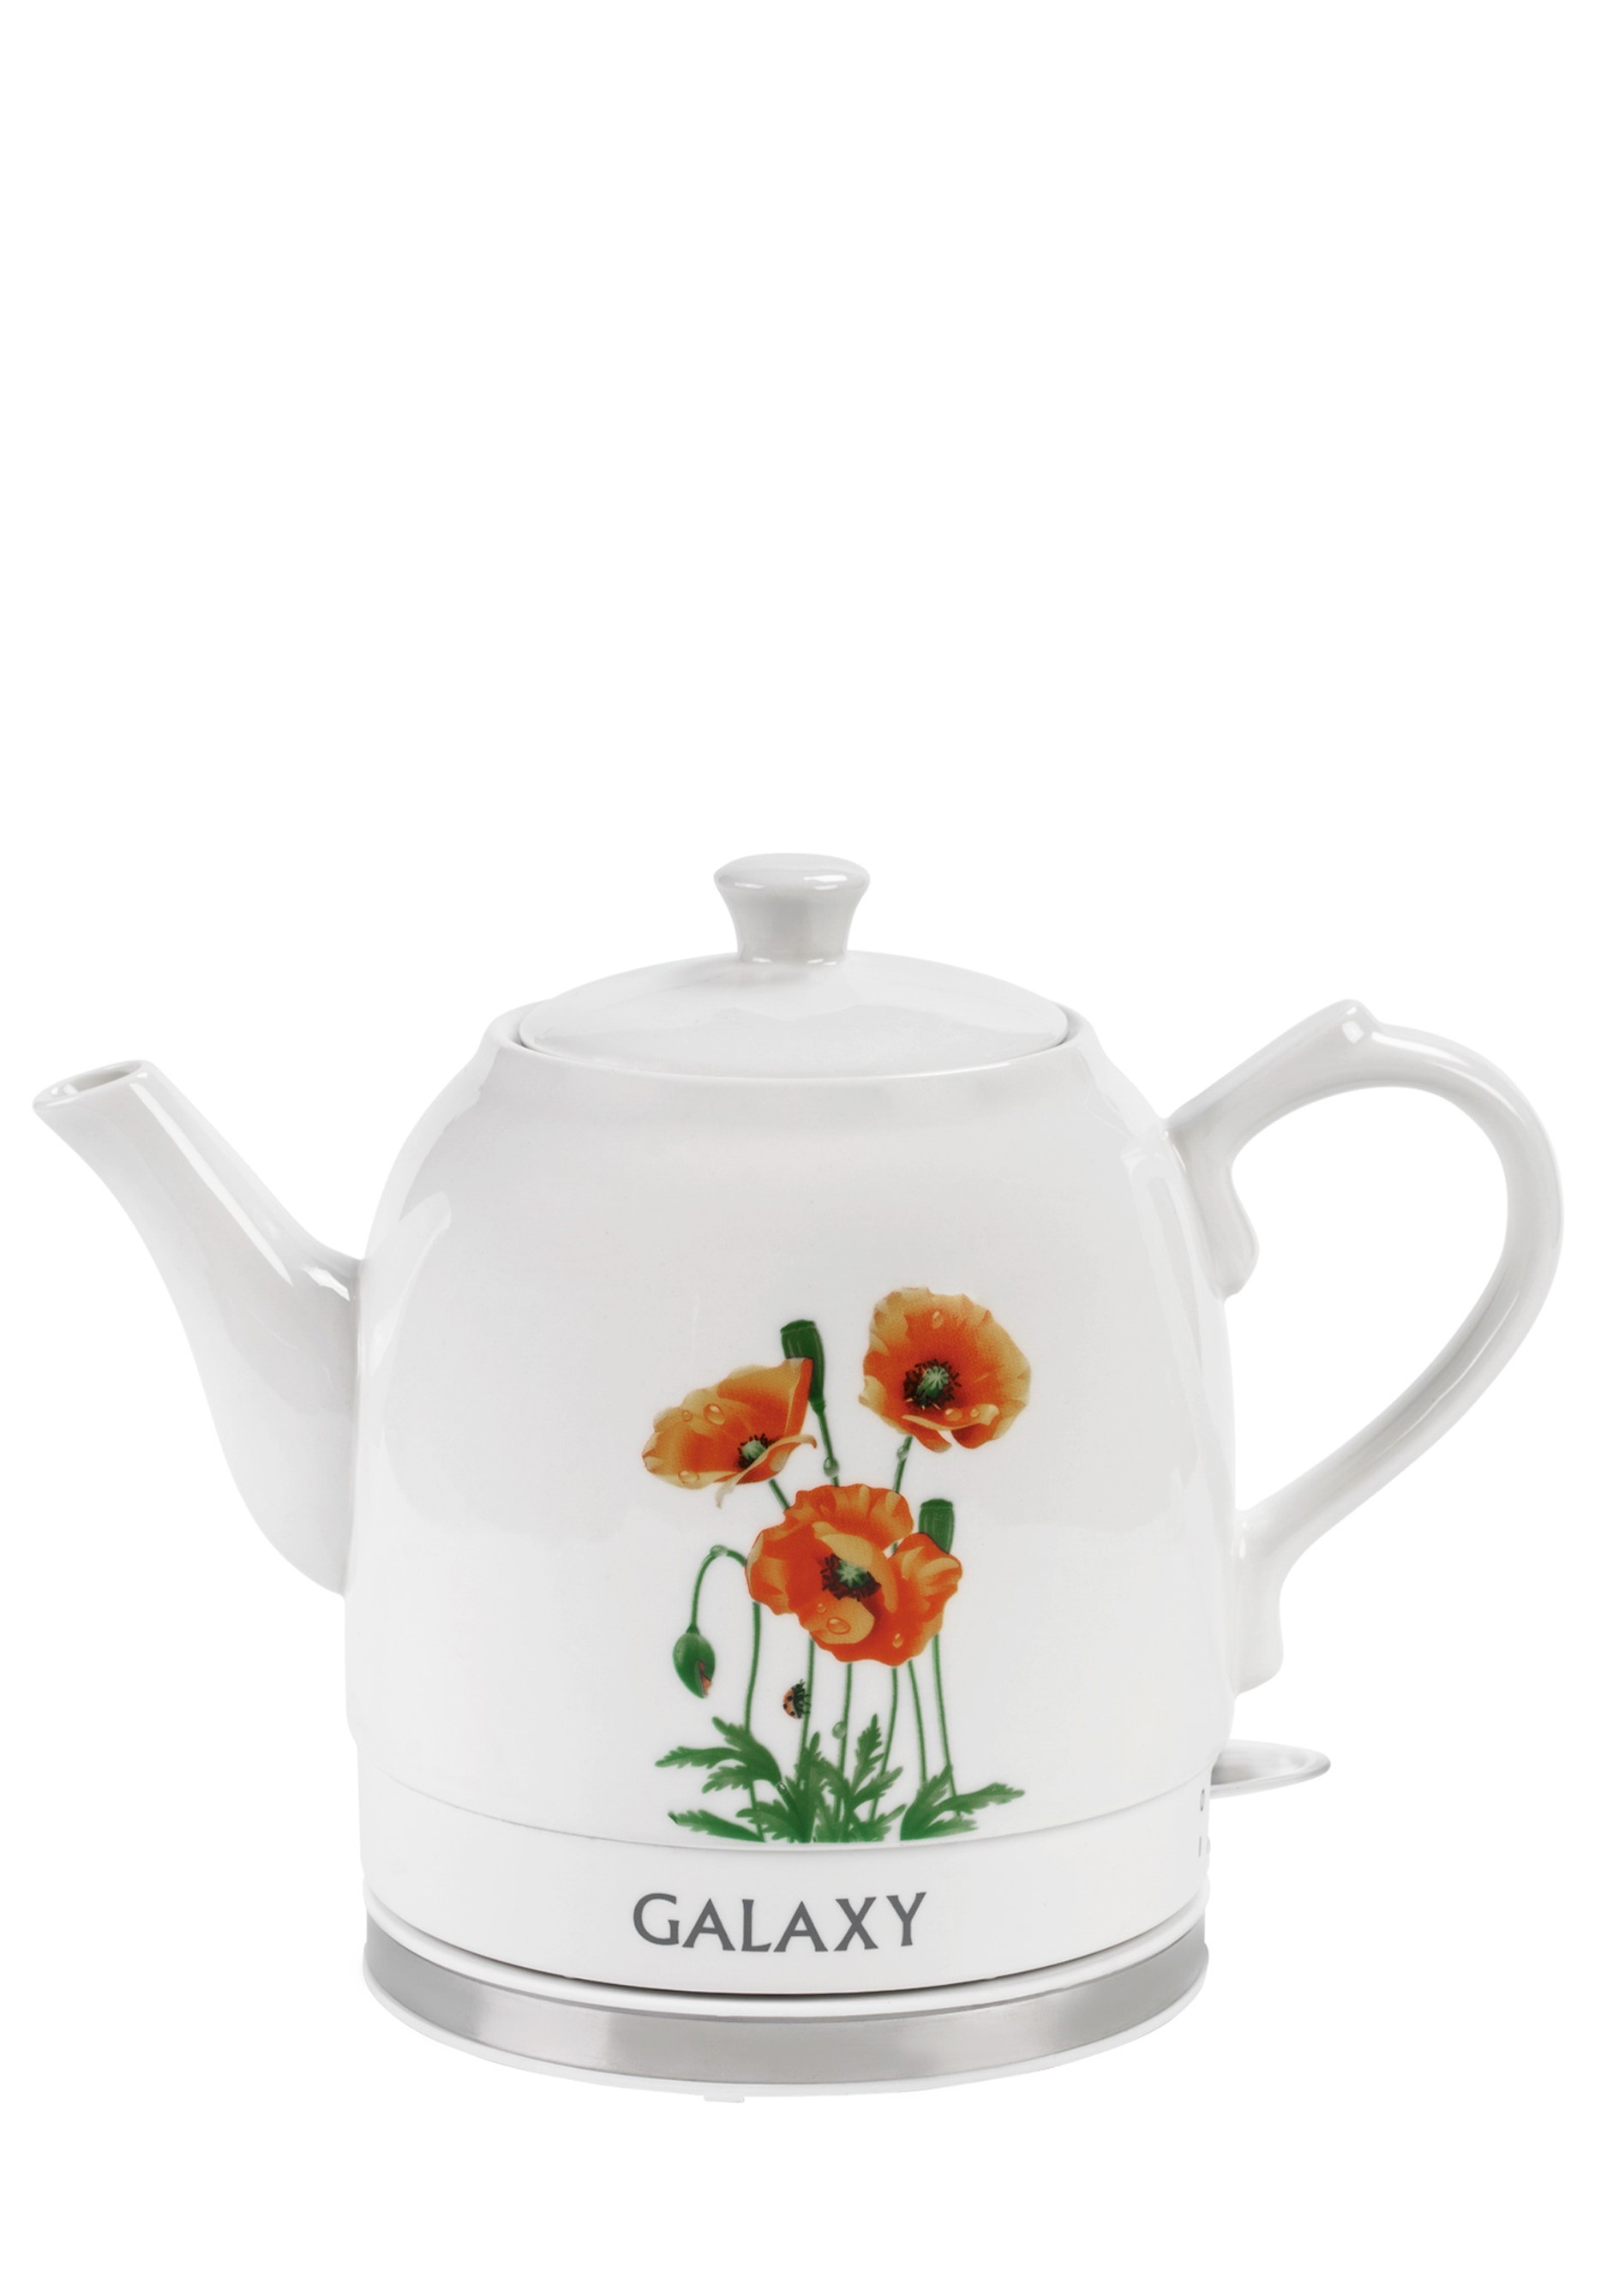 Электрический чайник с керамическим корпусом Galaxy, цвет белый - фото 2